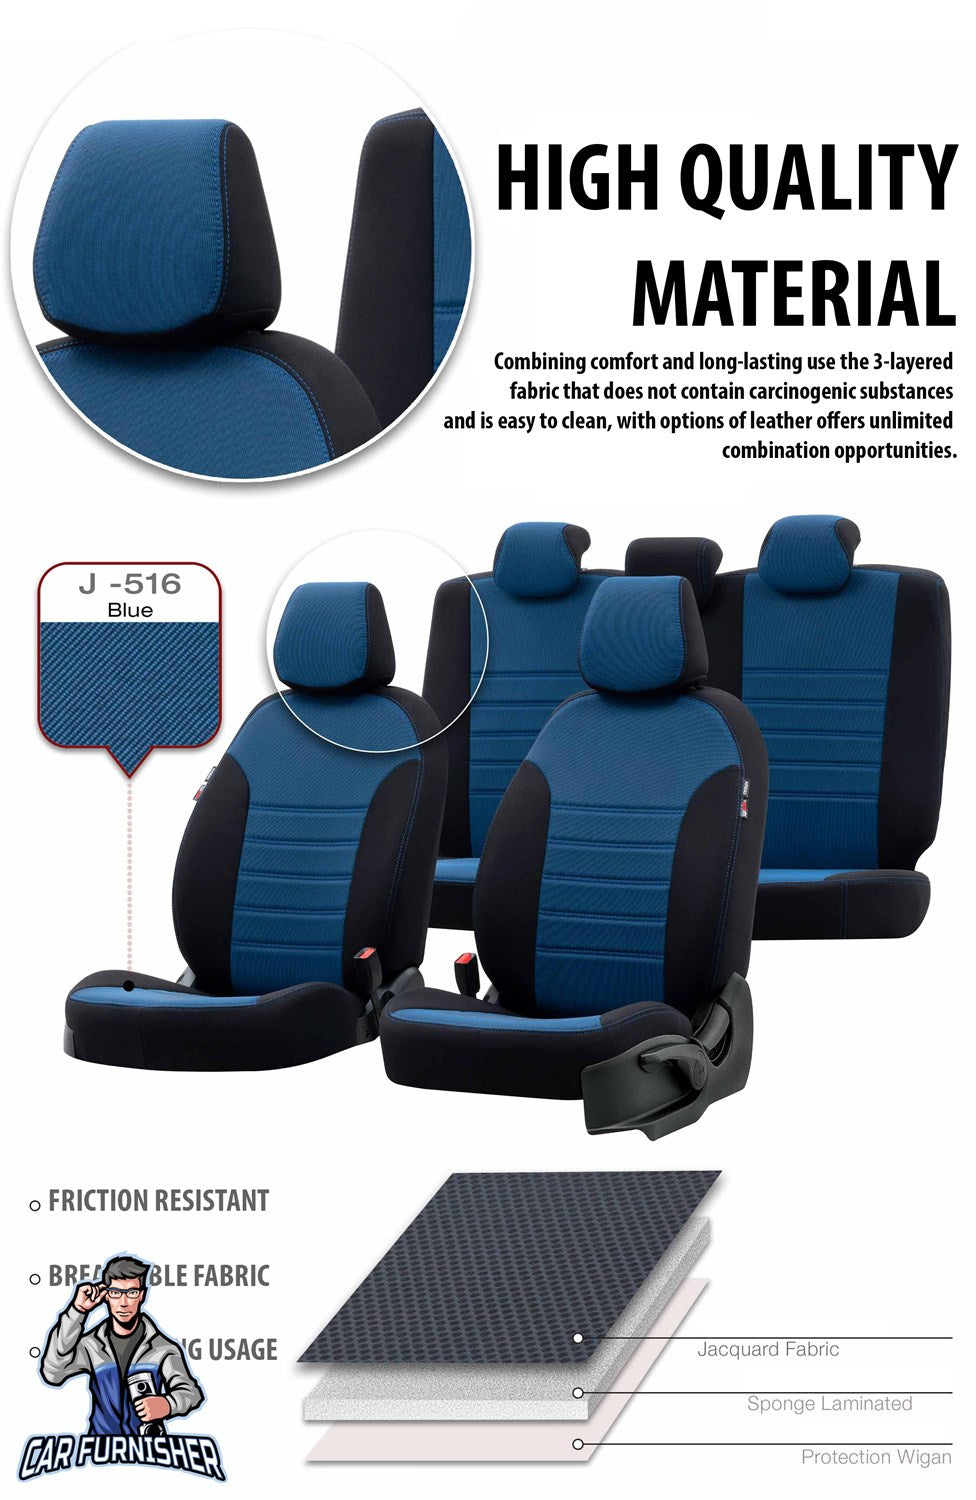 Toyota Auris Seat Cover Original Jacquard Design Smoked Black Jacquard Fabric